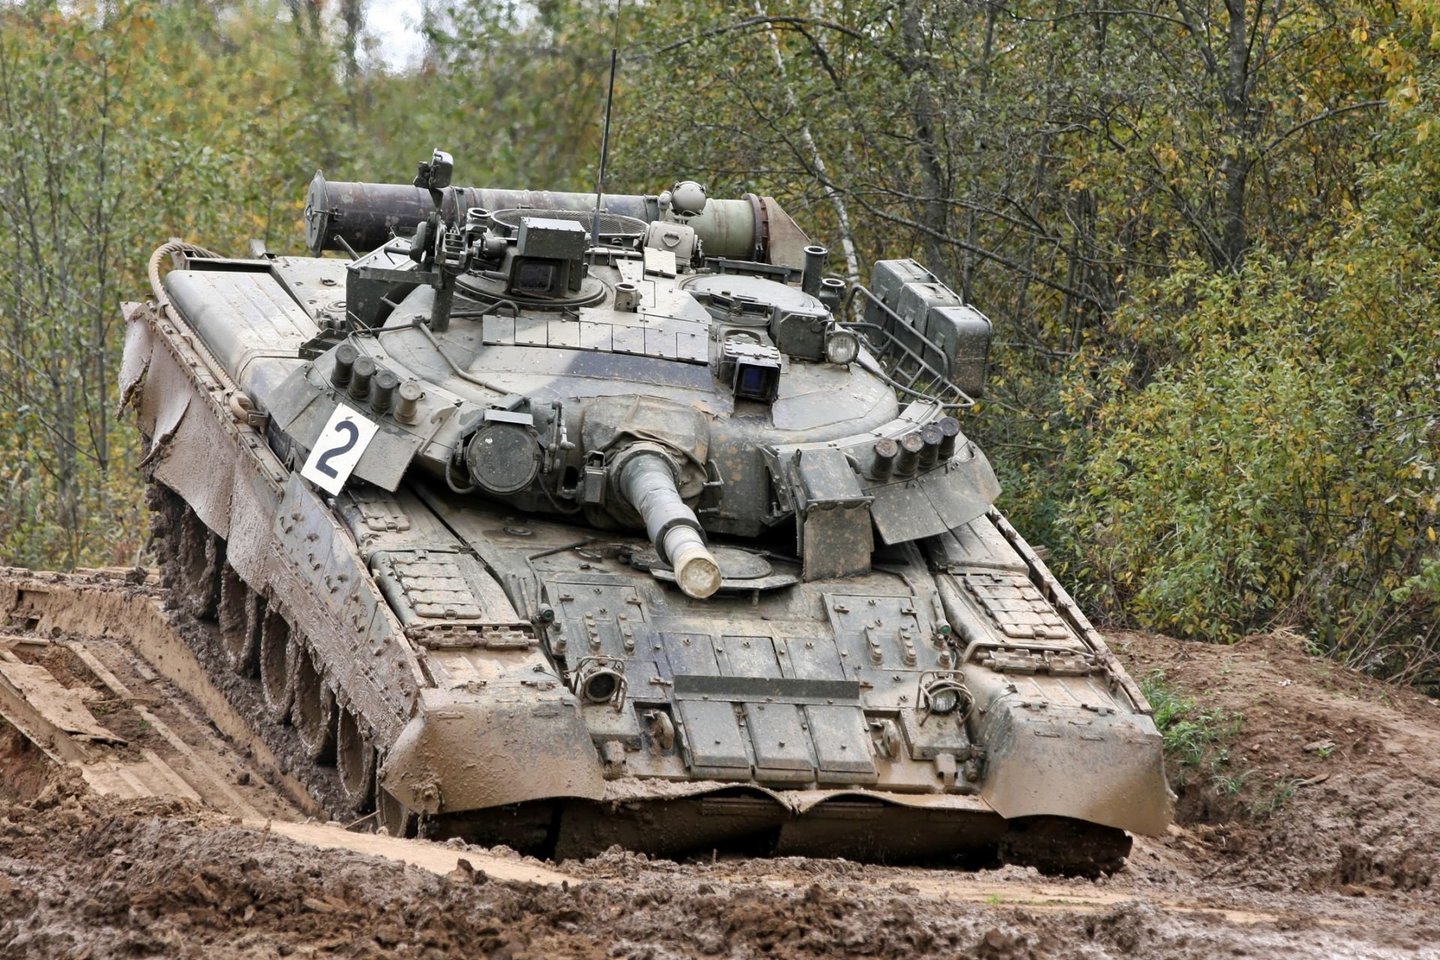  T-80 yra dar vienas iš sovietų laikų atkeliavęs tankas, kuris kaip ir T-72, tarnauja net ir „pasibaigus galiojimo laikui“.<br> Wikimedia commons